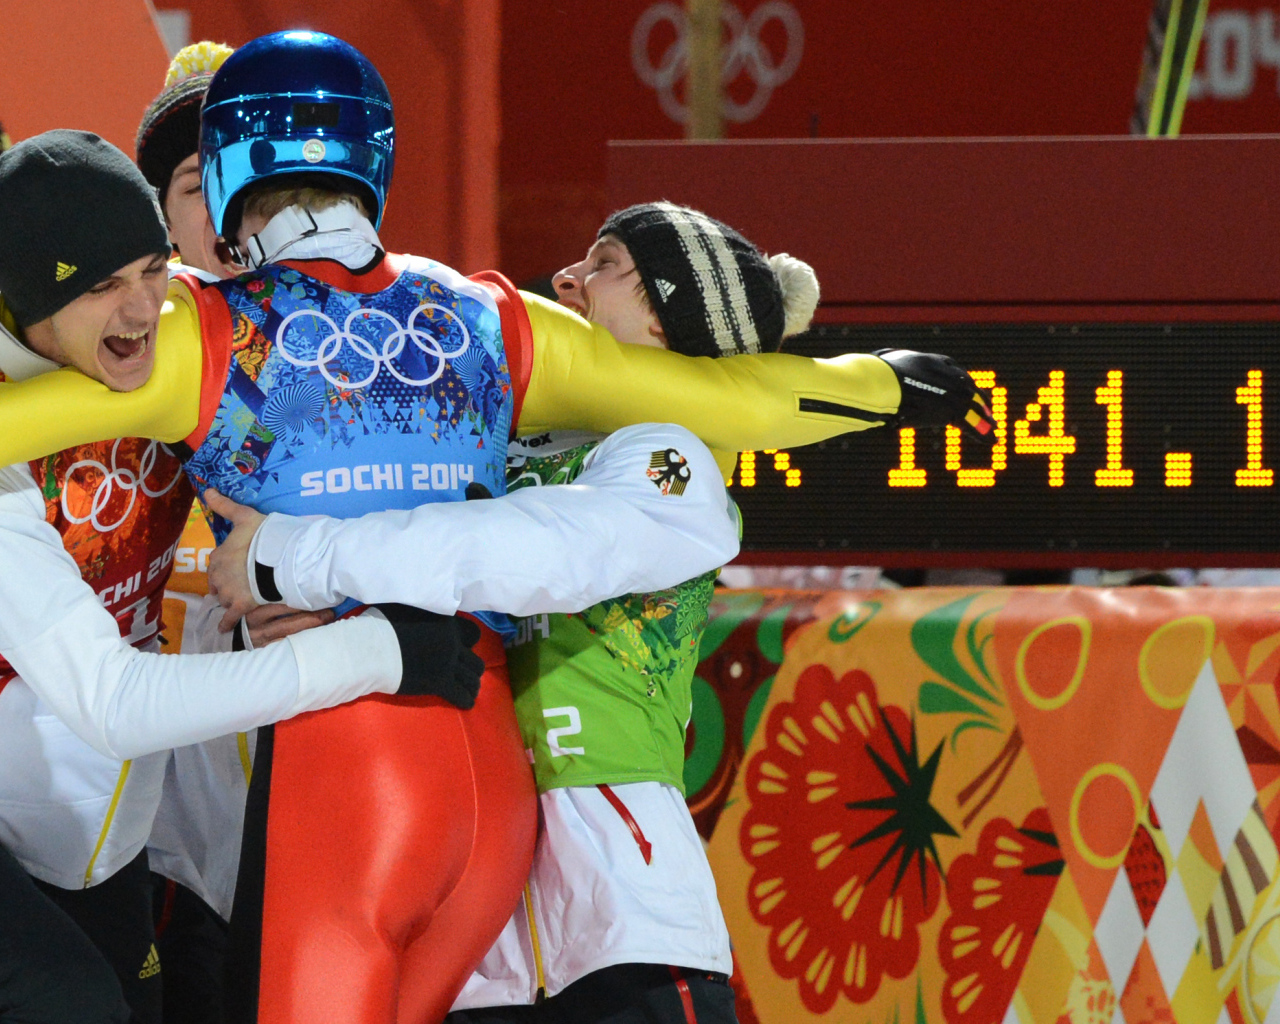 Зеверин Фройнд немецкий прыгун на лыжах обладатель золотой медали в Сочи